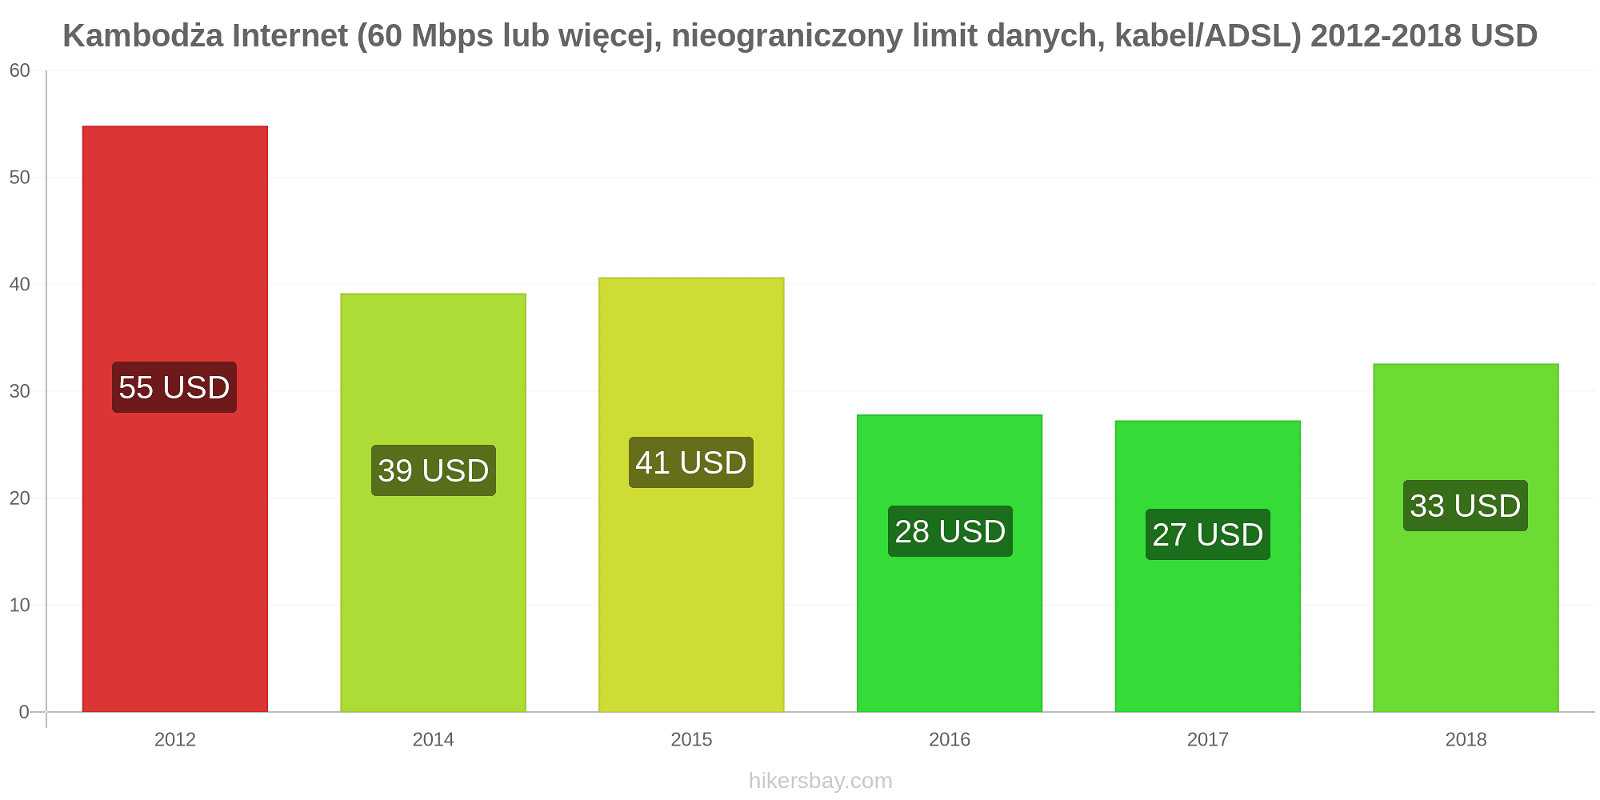 Kambodża zmiany cen Internet (60 Mbps lub więcej, nieograniczony limit danych, kabel/ADSL) hikersbay.com